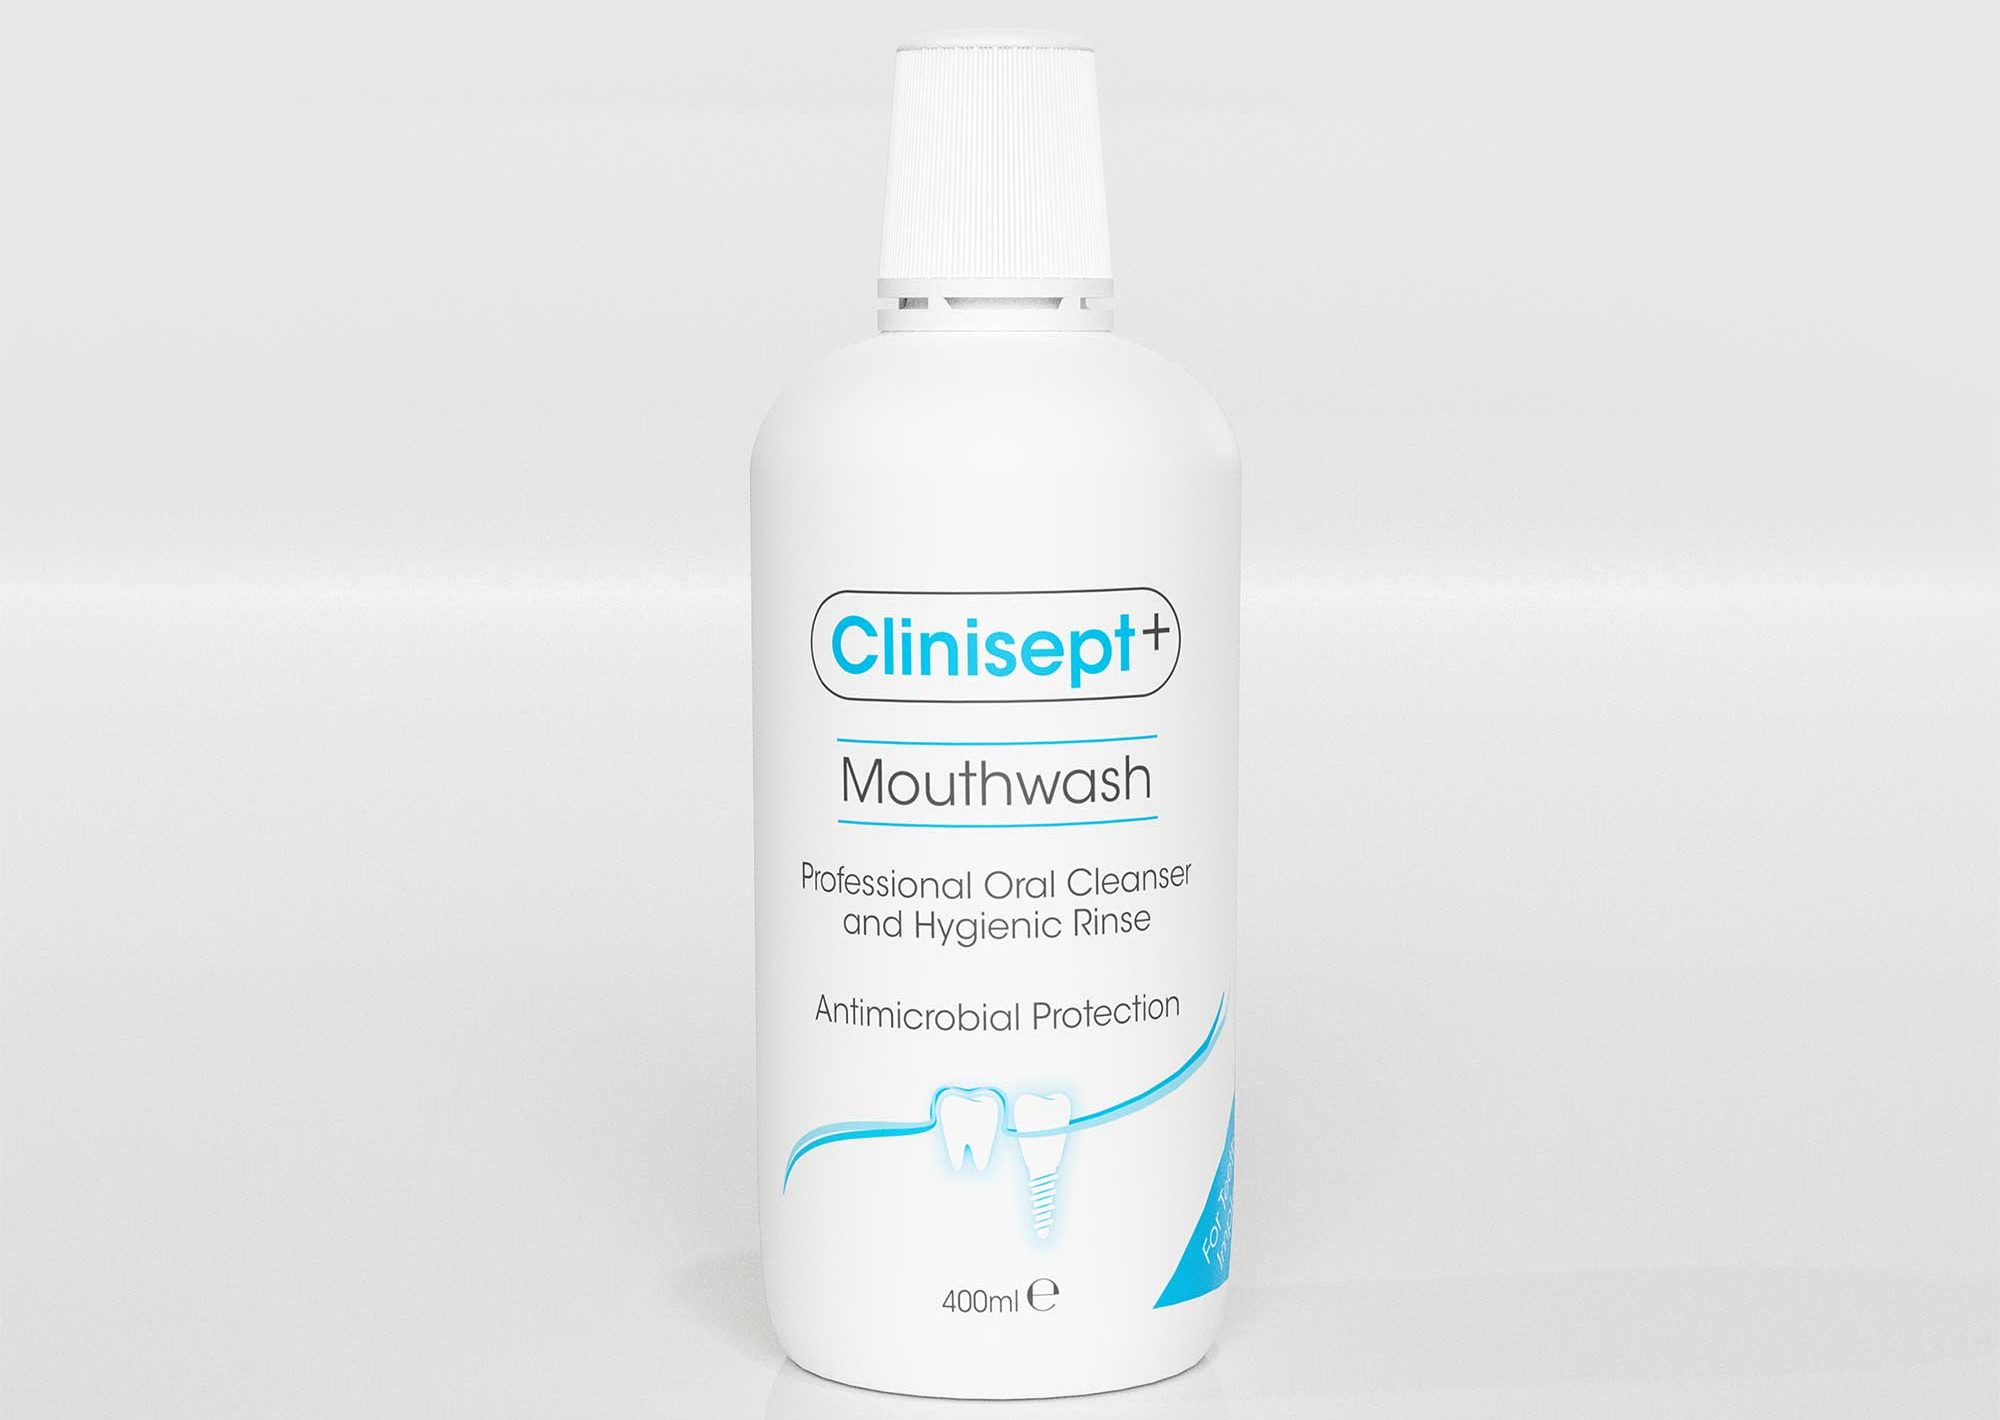 clinisept+ mouthwash bottle